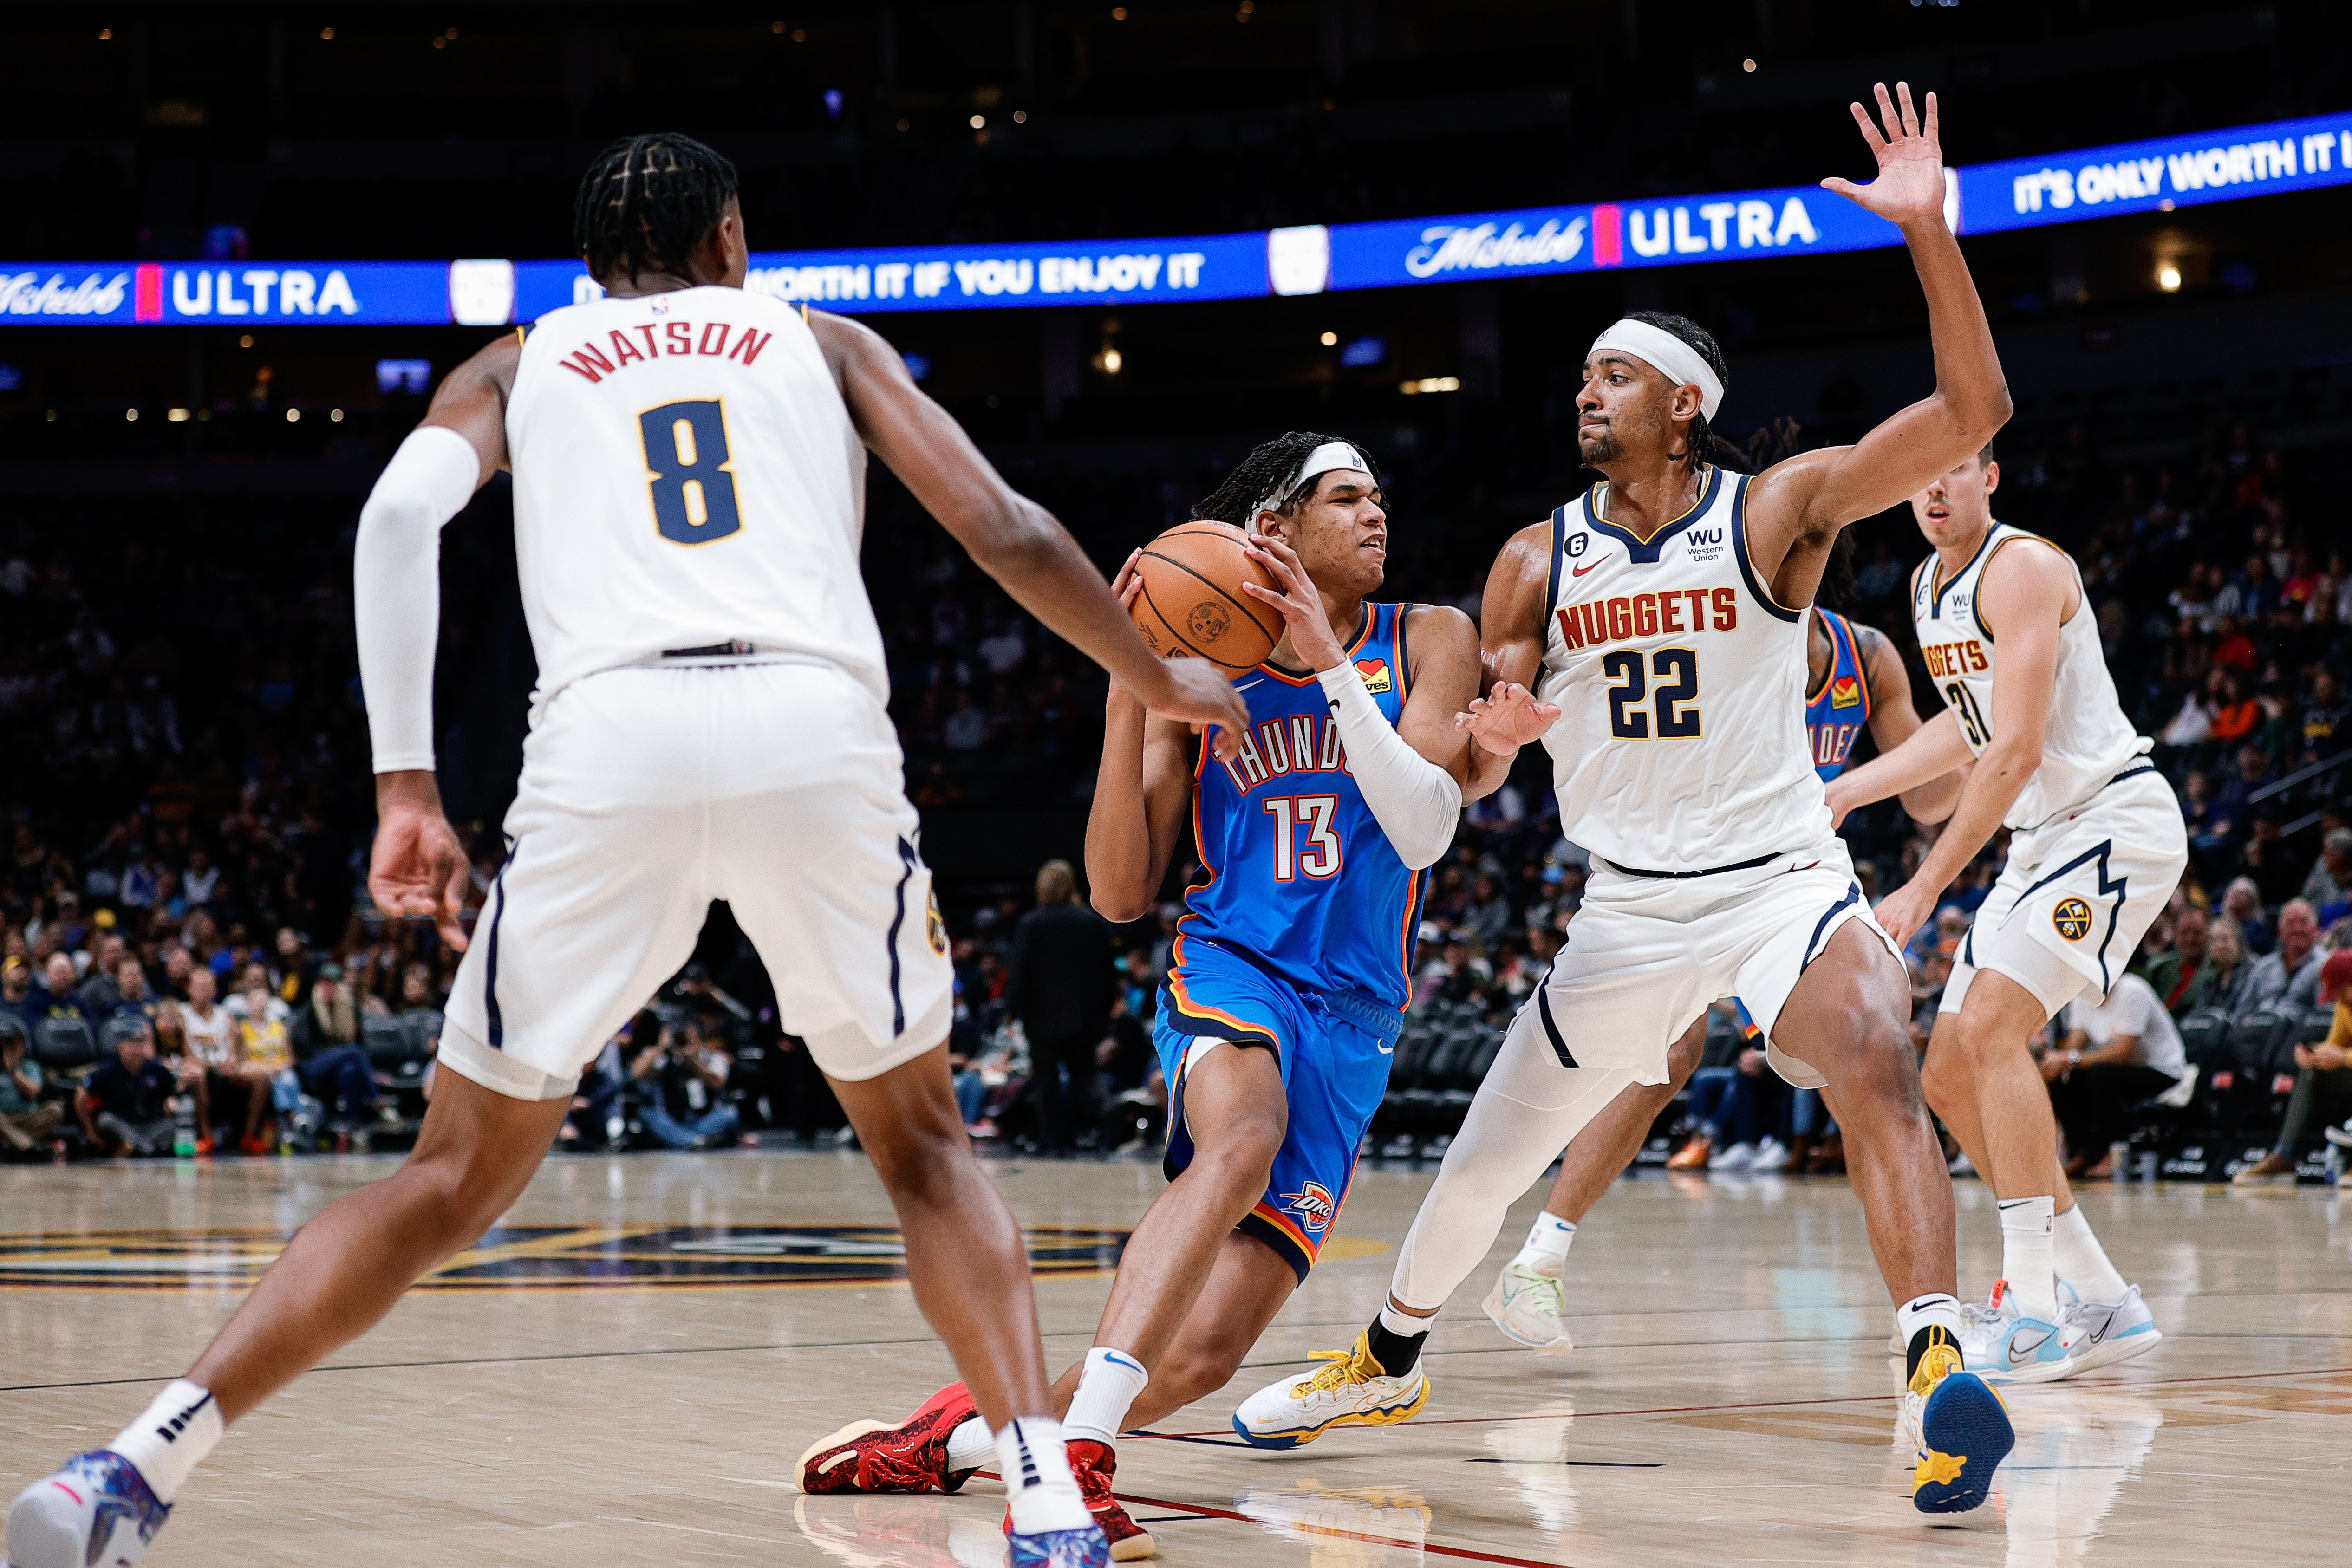 NBA: Preseason-Oklahoma City Thunder at Denver Nuggets